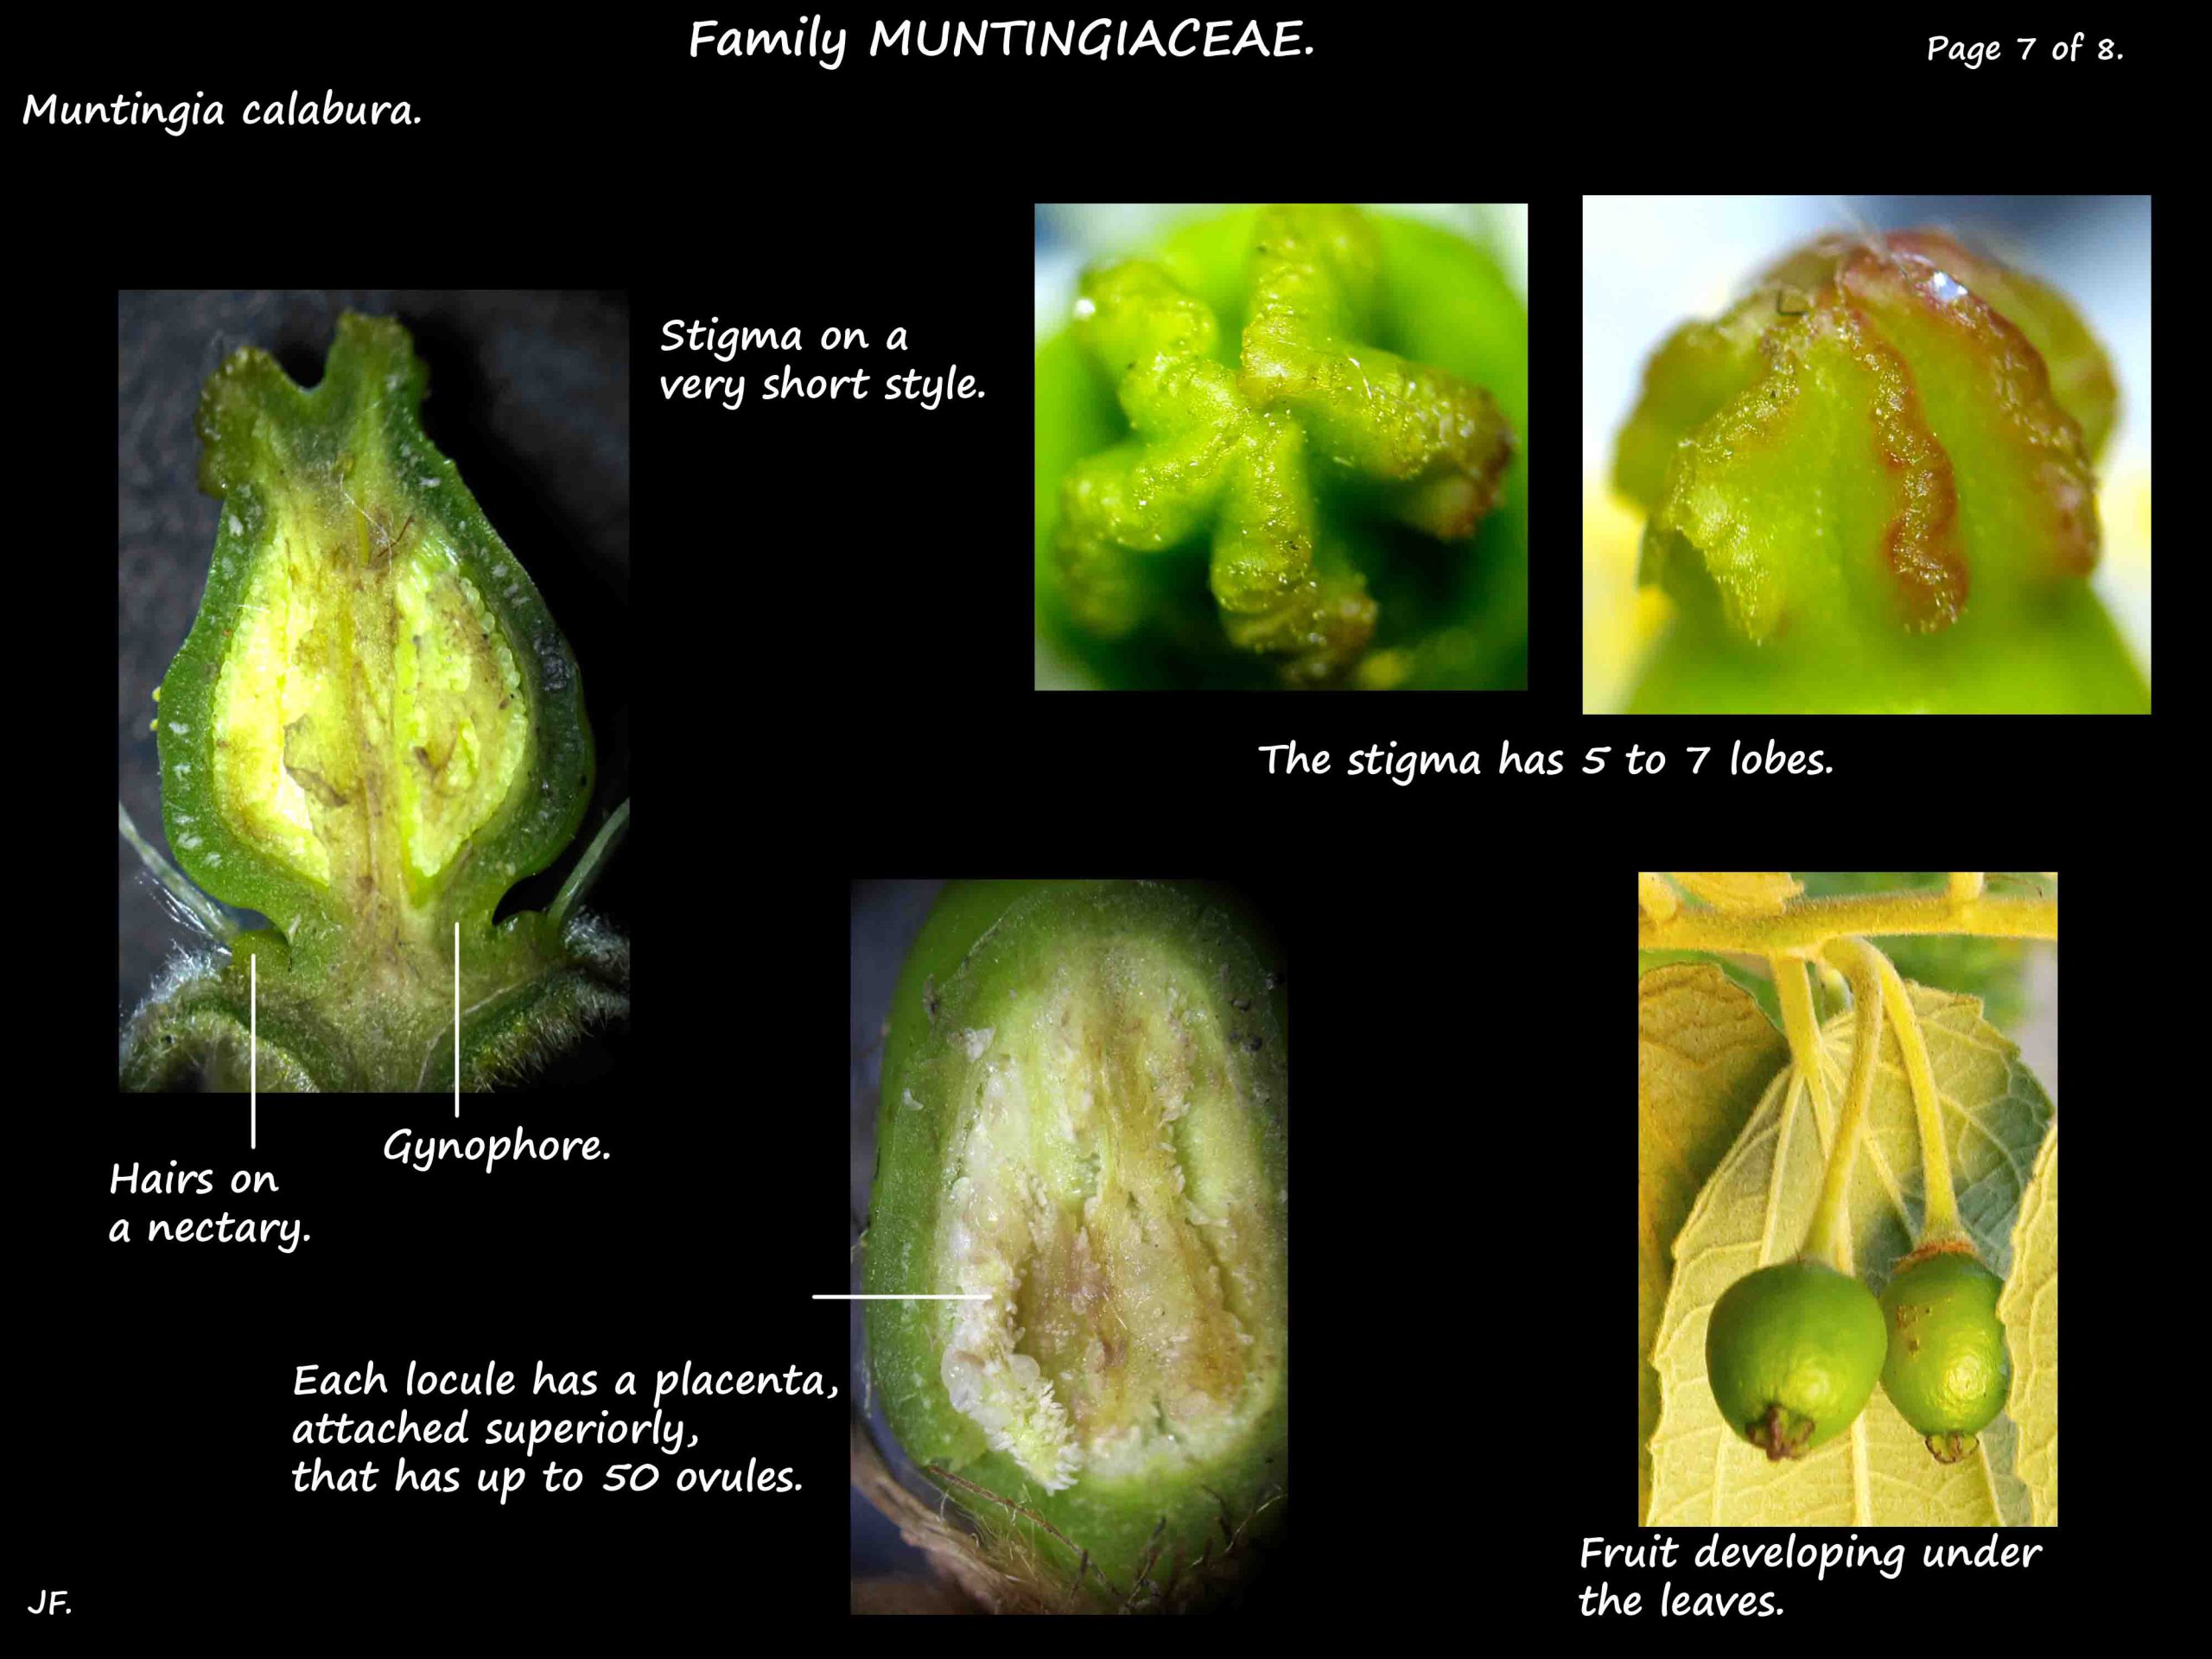 7 Muntingia ovary & nectaries